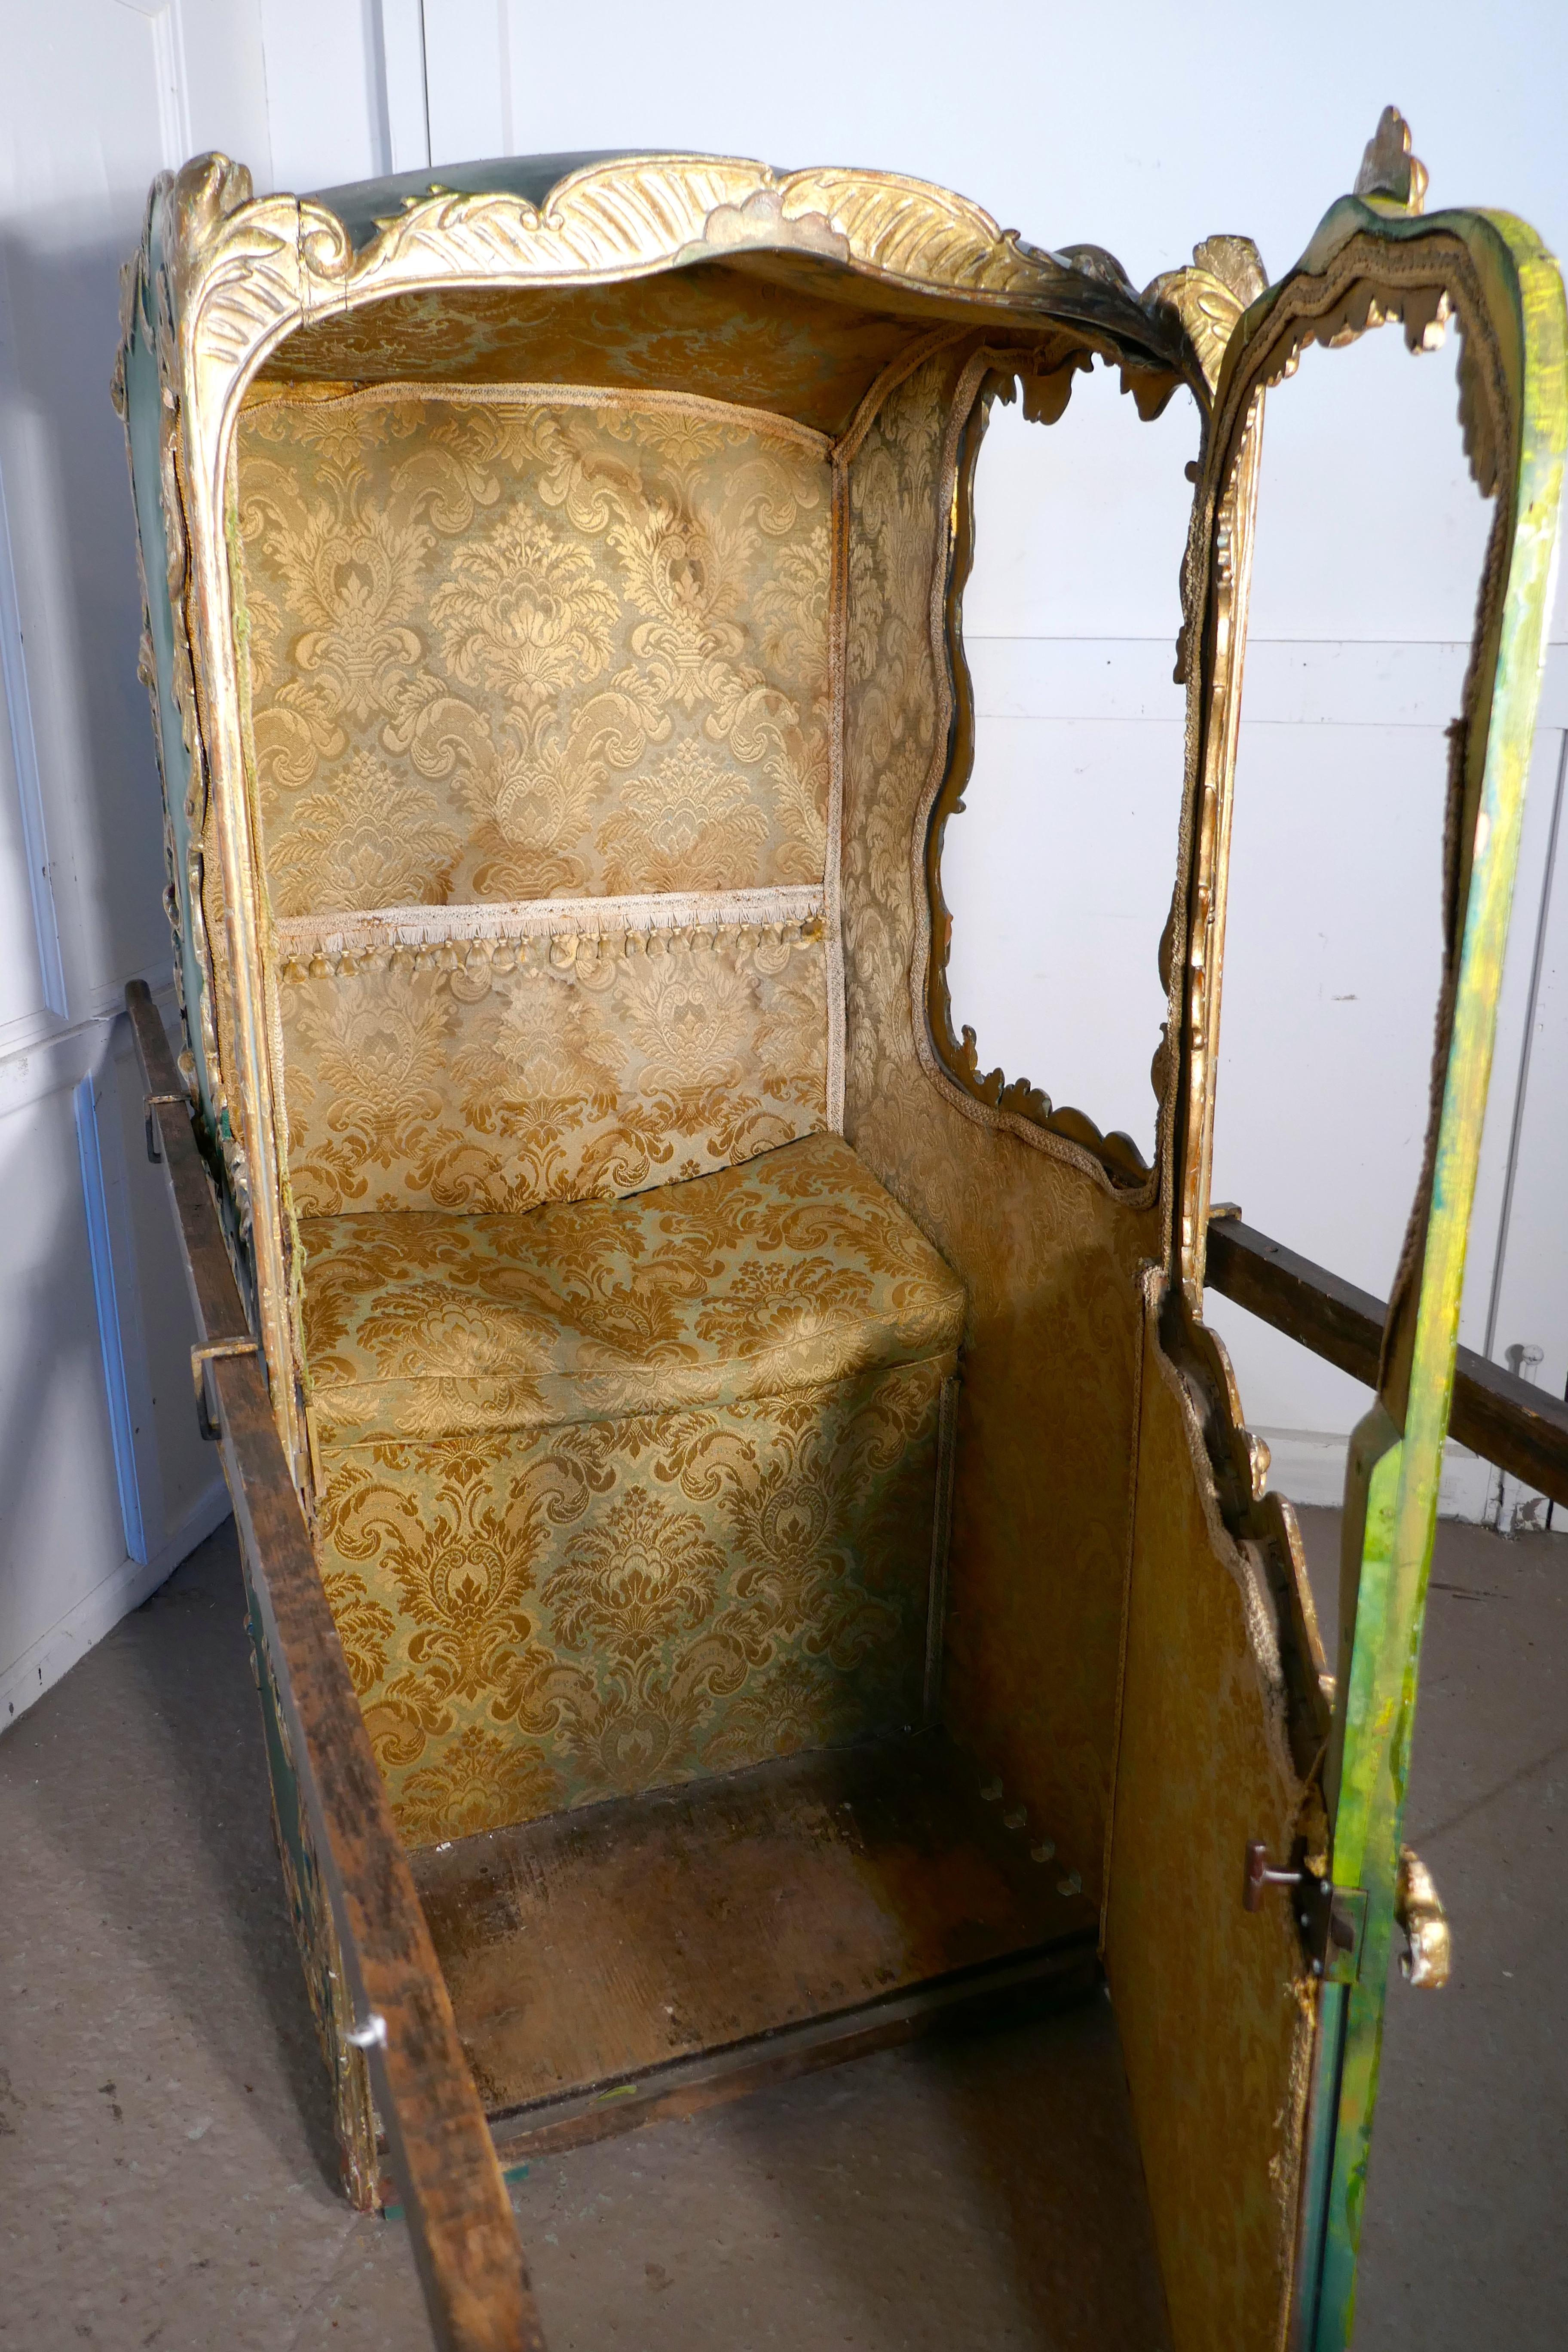 Chaise de Sedan italienne du 19ème siècle  

Il s'agit d'une pièce du milieu du 19e siècle, de style rococo, en vert et or, tapissée à l'intérieur d'un lourd brocart d'or, avec un coussin sur le siège.
La chaise a une porte qui s'ouvre vers